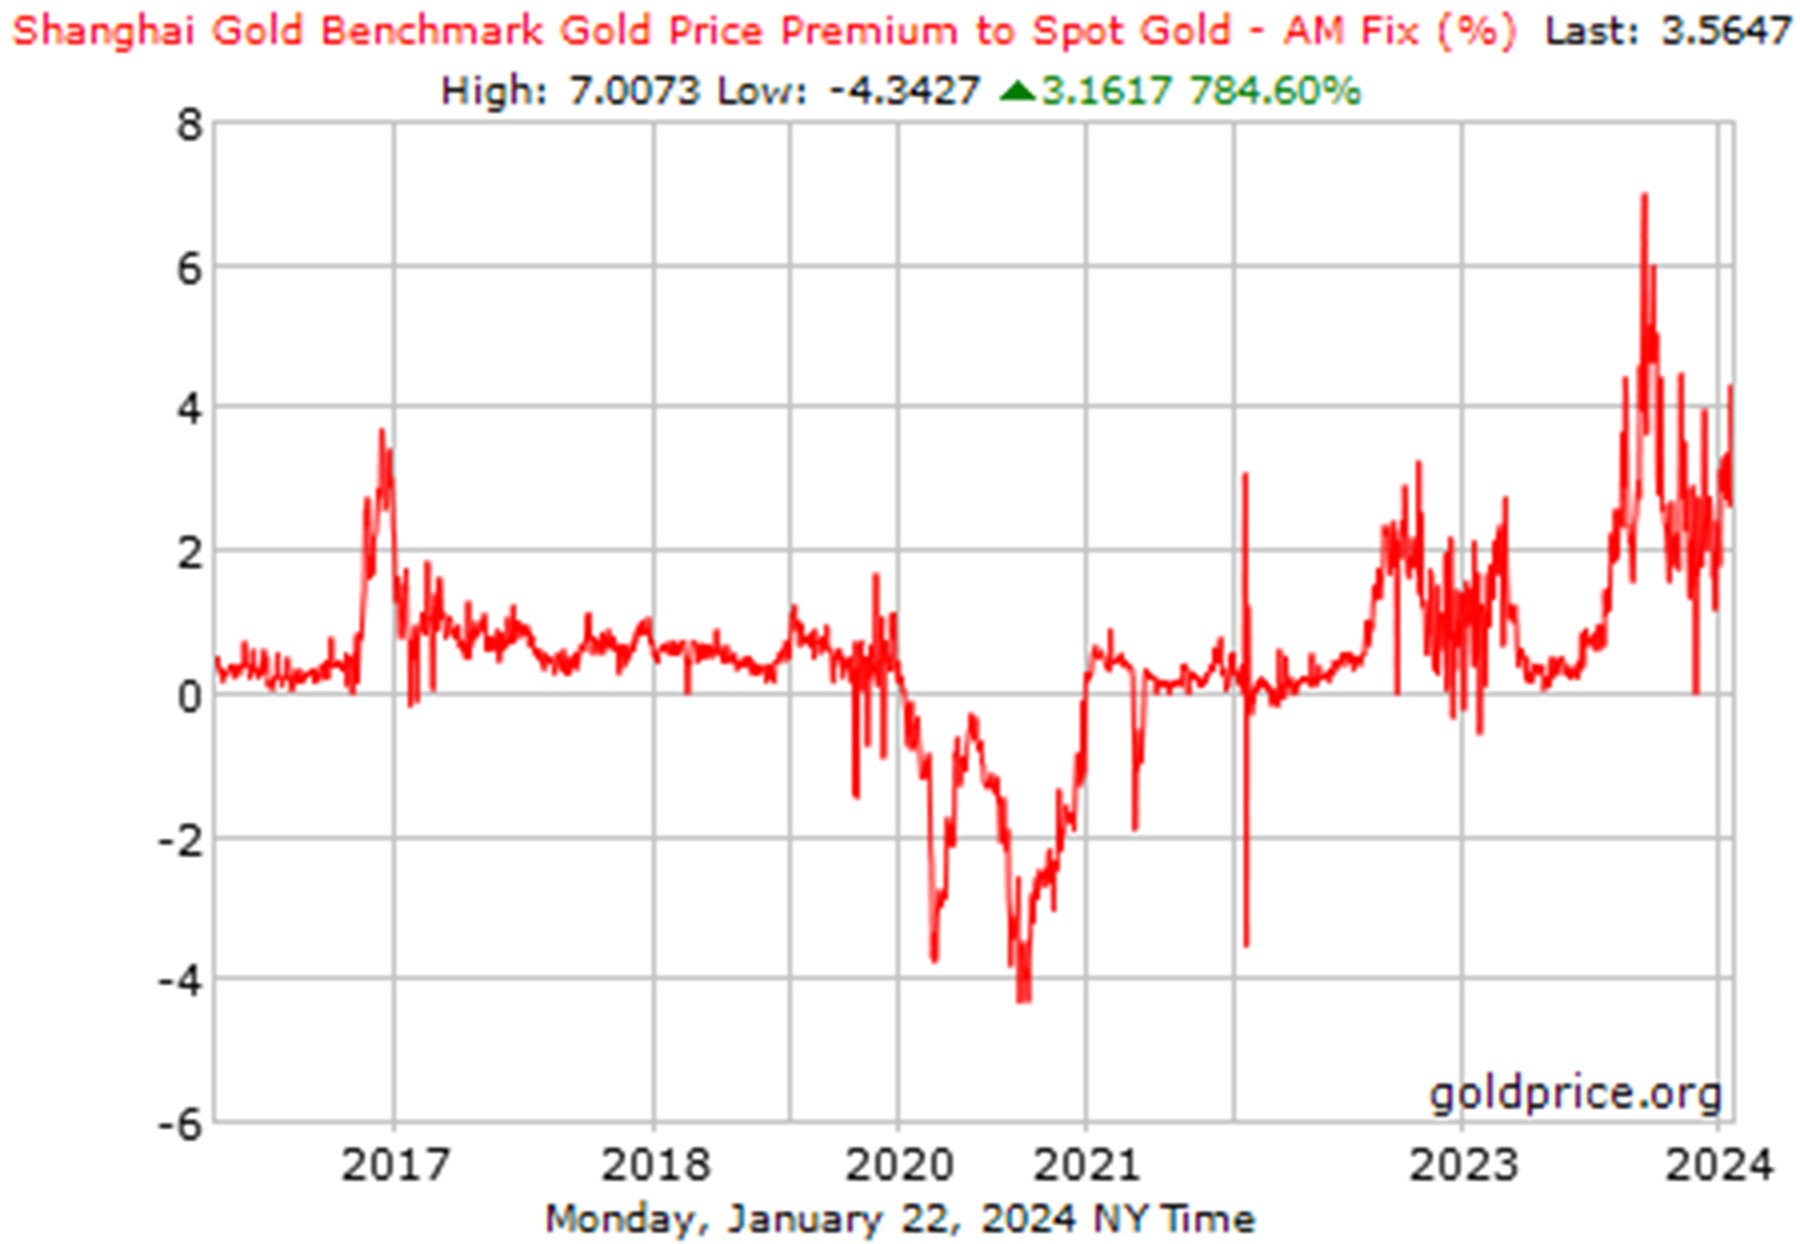 Das Diagramm zeigt die Prämie des Shanghai Gold Benchmark Preises gegenüber dem Spot Gold (AM Fix) in Prozent. Es illustriert die Fluktuationen von 2017 bis 2024 mit Spitzen und Tälern, wobei der aktuelle Wert bei 3.5647% liegt.